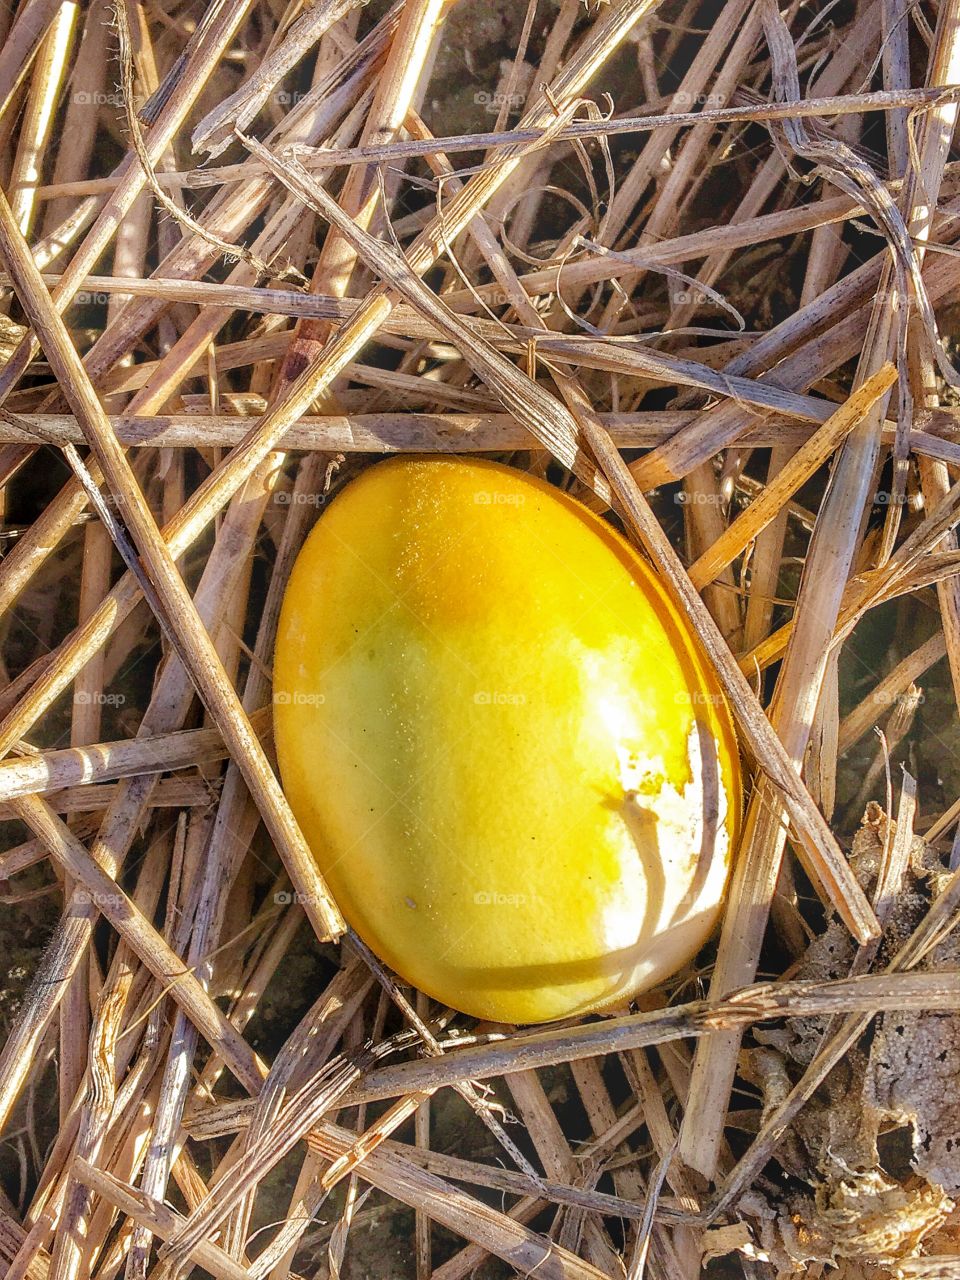 Looks like an egg